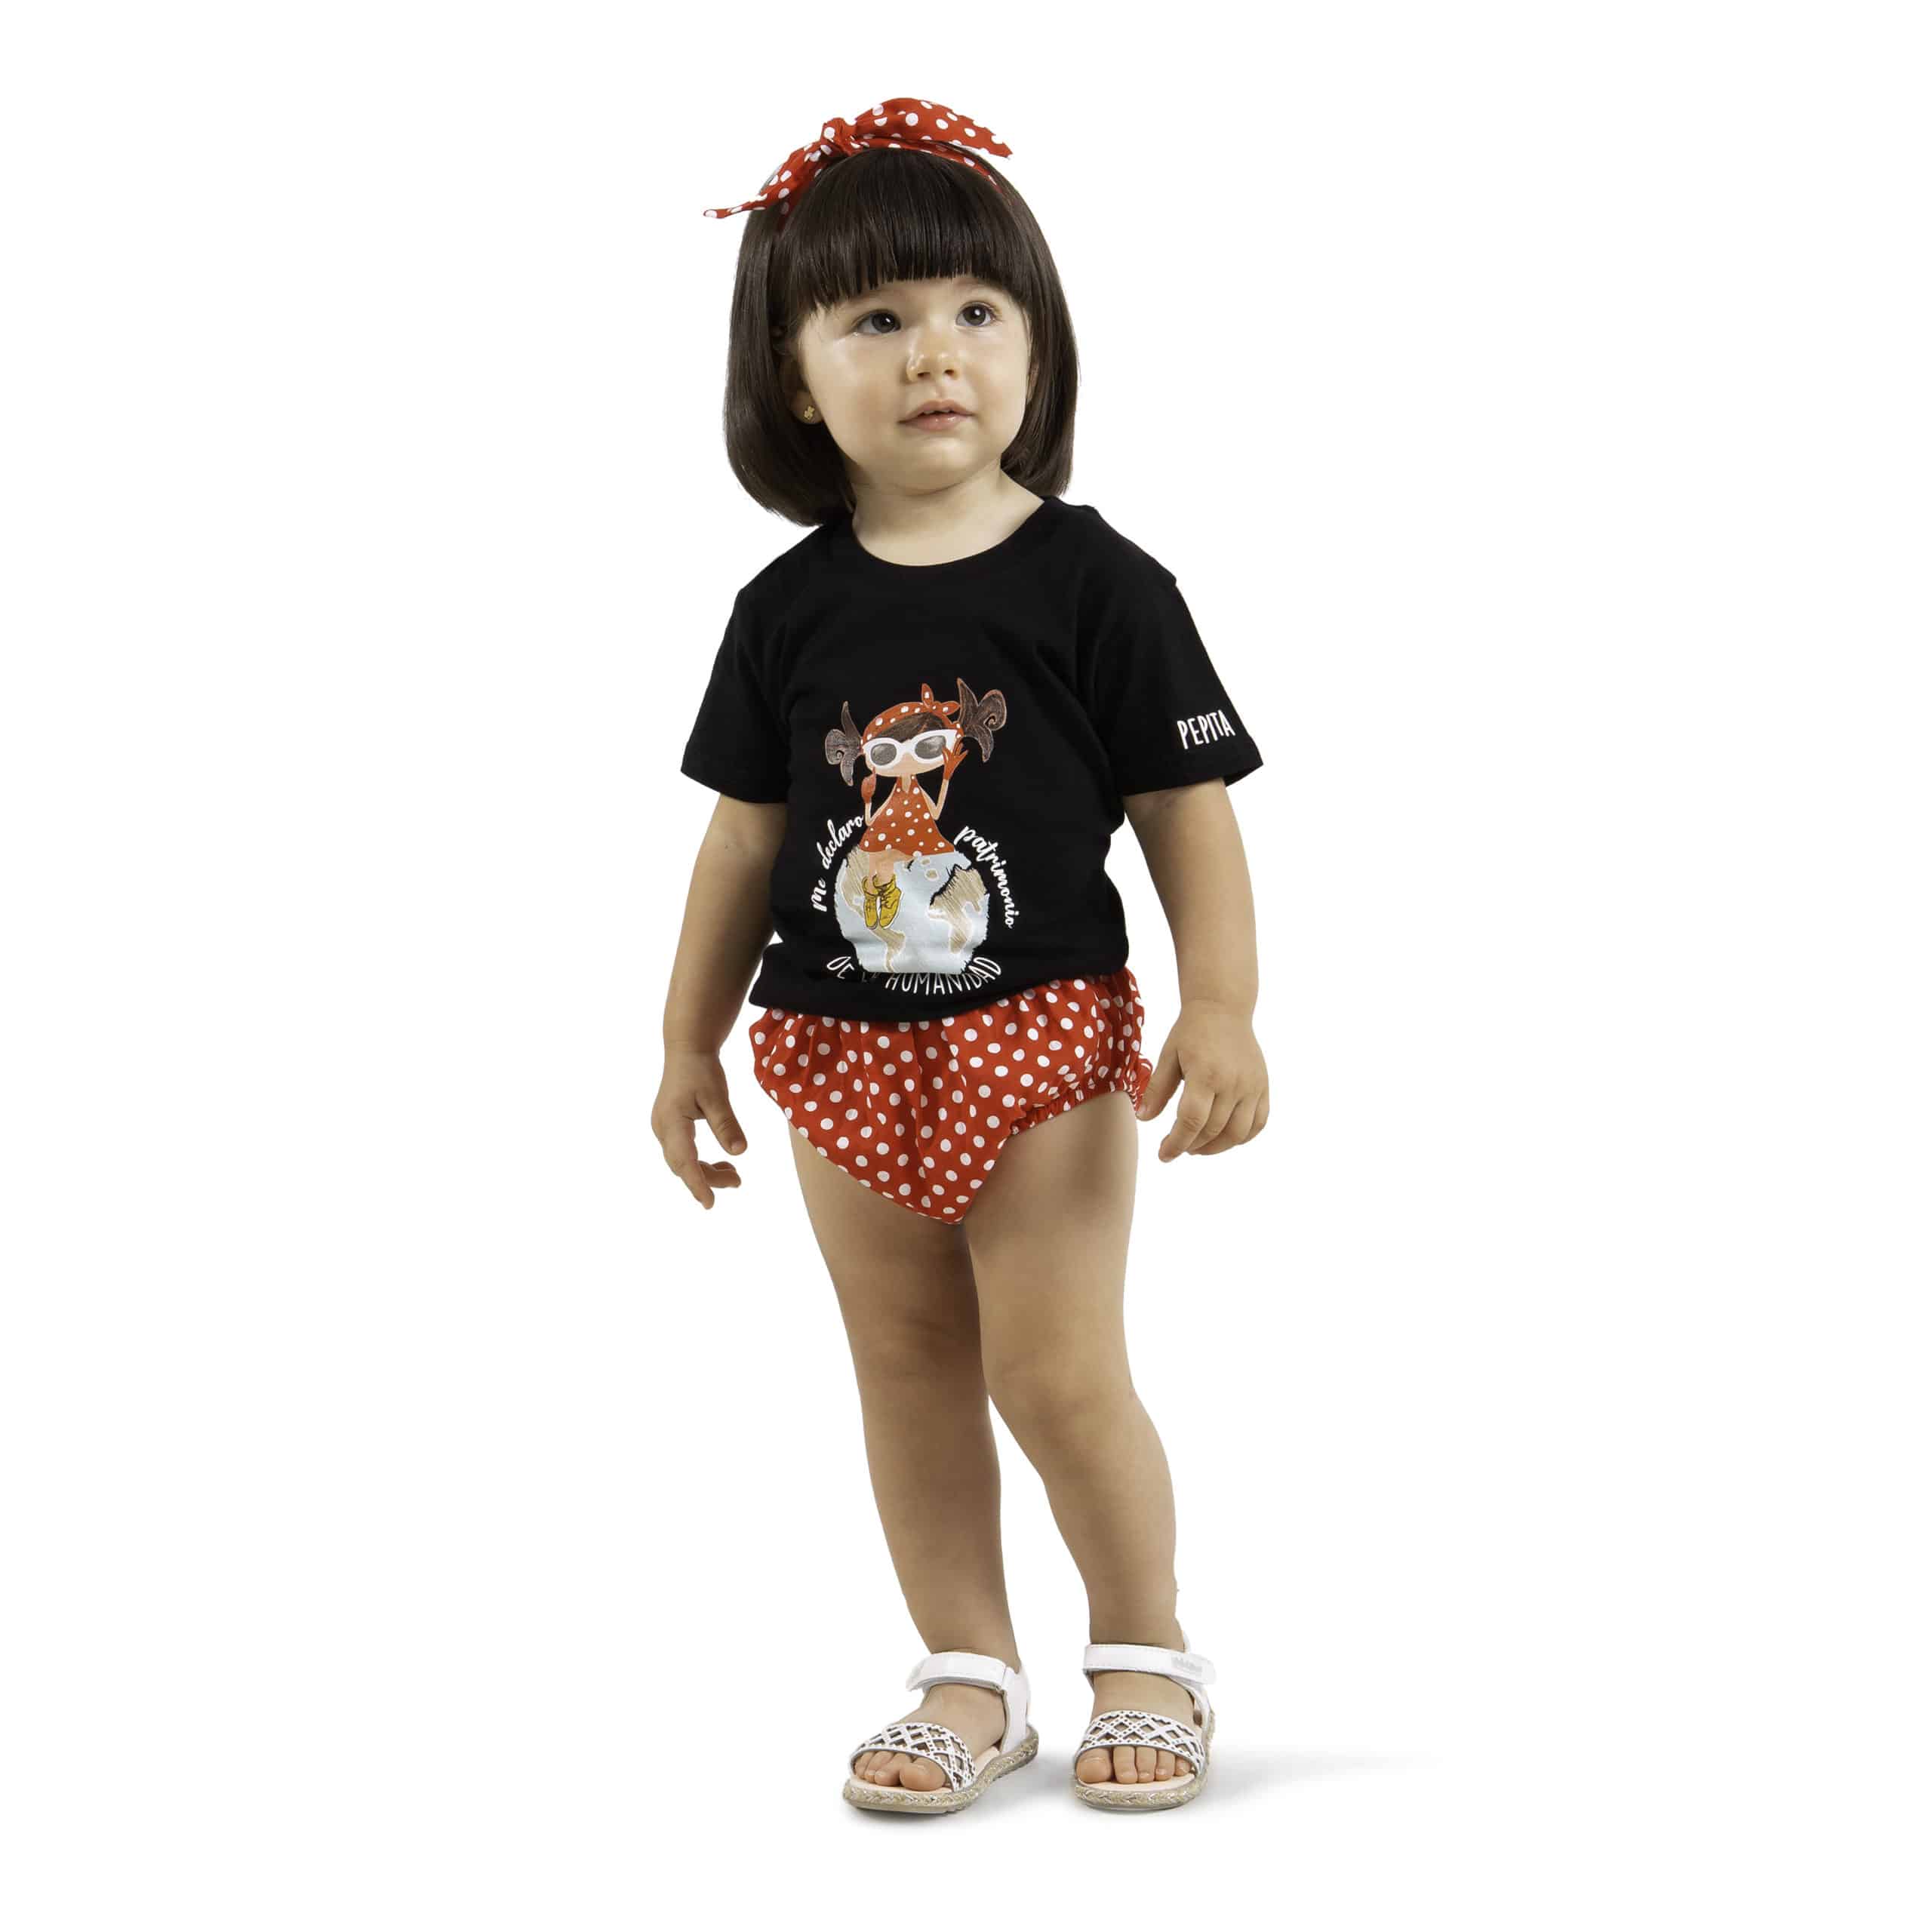 Camiseta de algodón orgánico de la marca Pepita Viajera en color negro para aquellos que se declaran Patrimonio de la humanidad. Vista puesta en modelo chica bebé